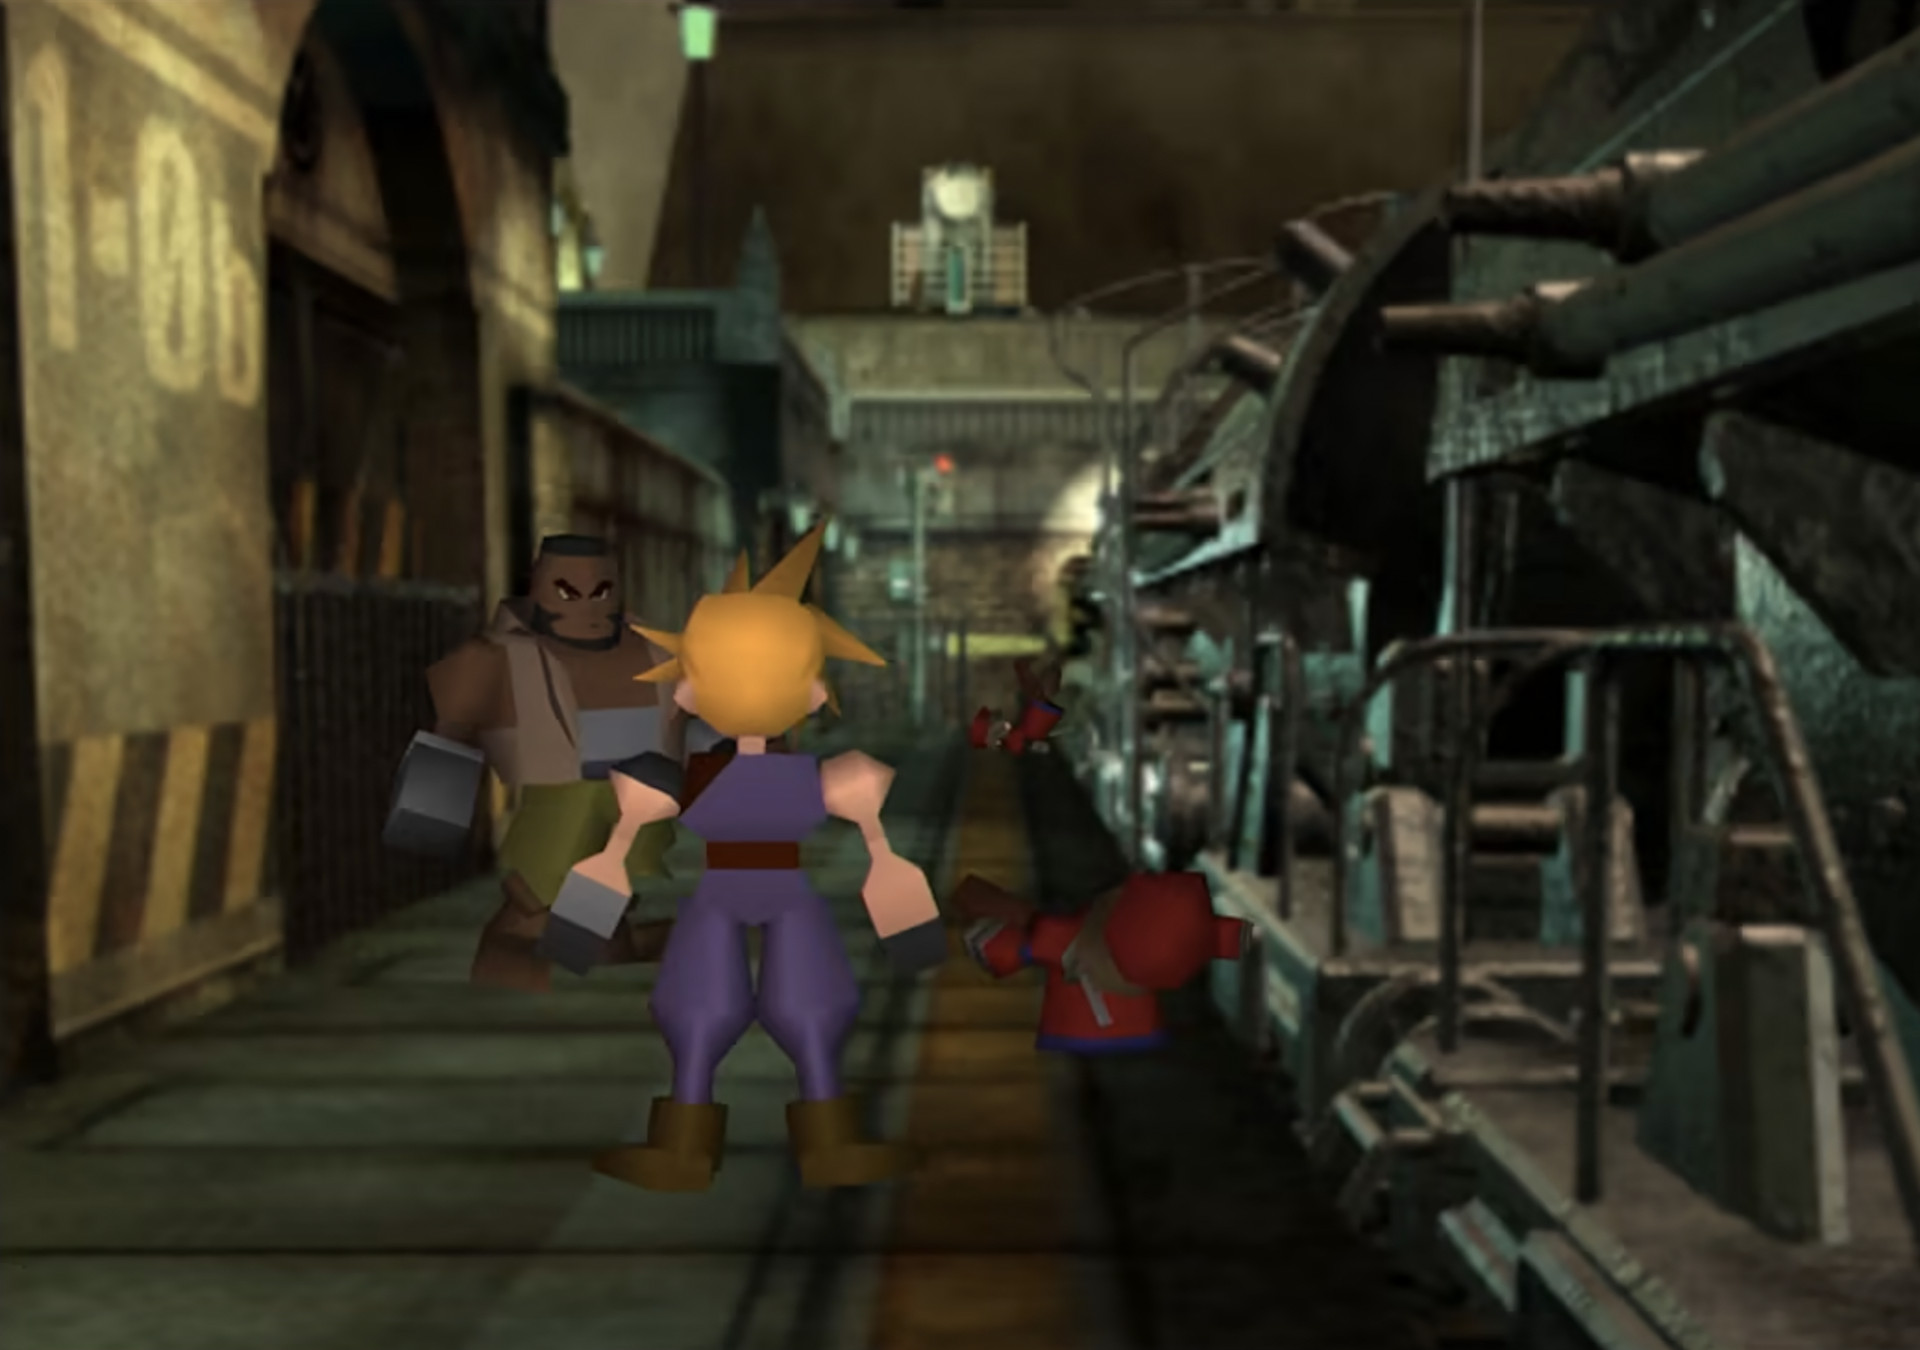 Un'immagine del gioco originale di Final Fantasy 7 portato su Nintendo Switch. Mostra Cloud e Barret con la grafica tradizionale della PlayStation 1.